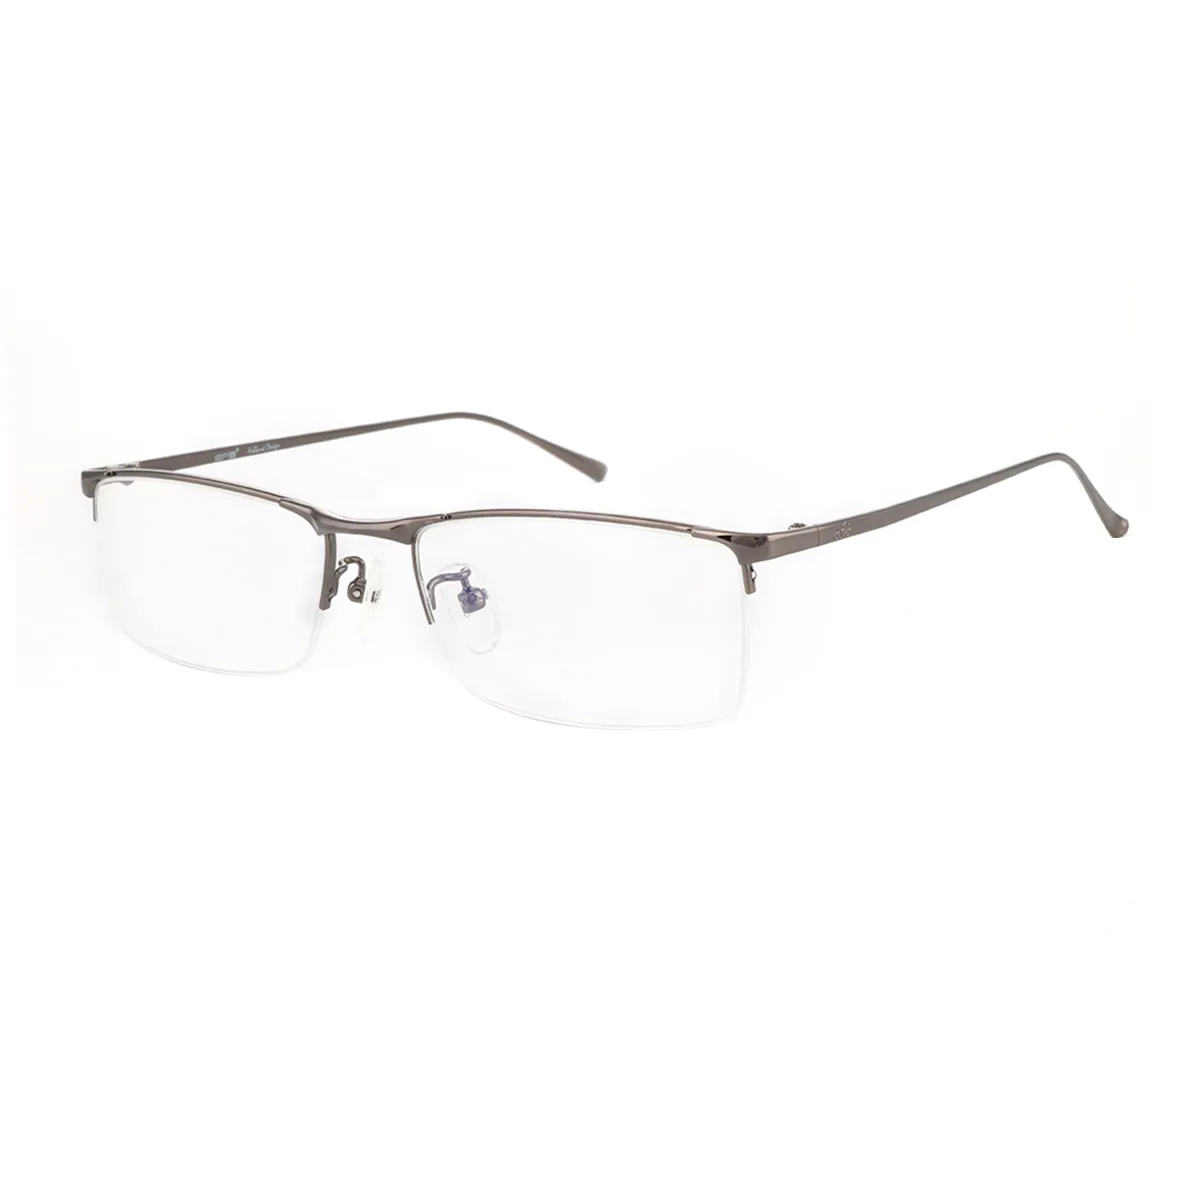 Balaam - Rectangle Gunmetal Glasses for Men - EFE